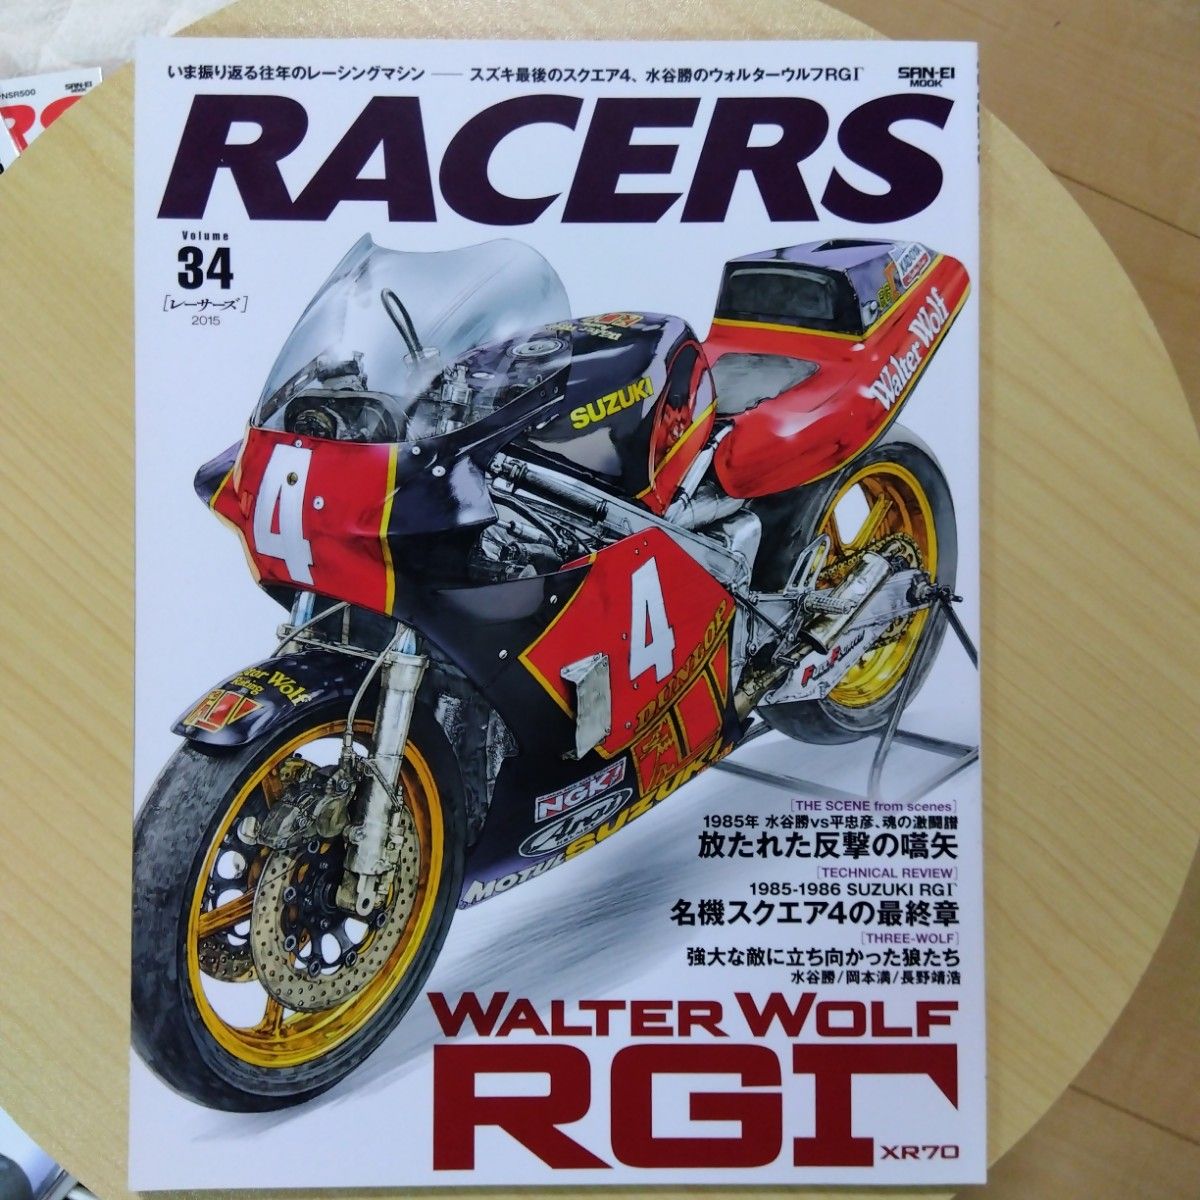 RACERS volume 34 レーサーズ Vol サンエイ ムック RG ウォルターウルフ スクエア 水谷 